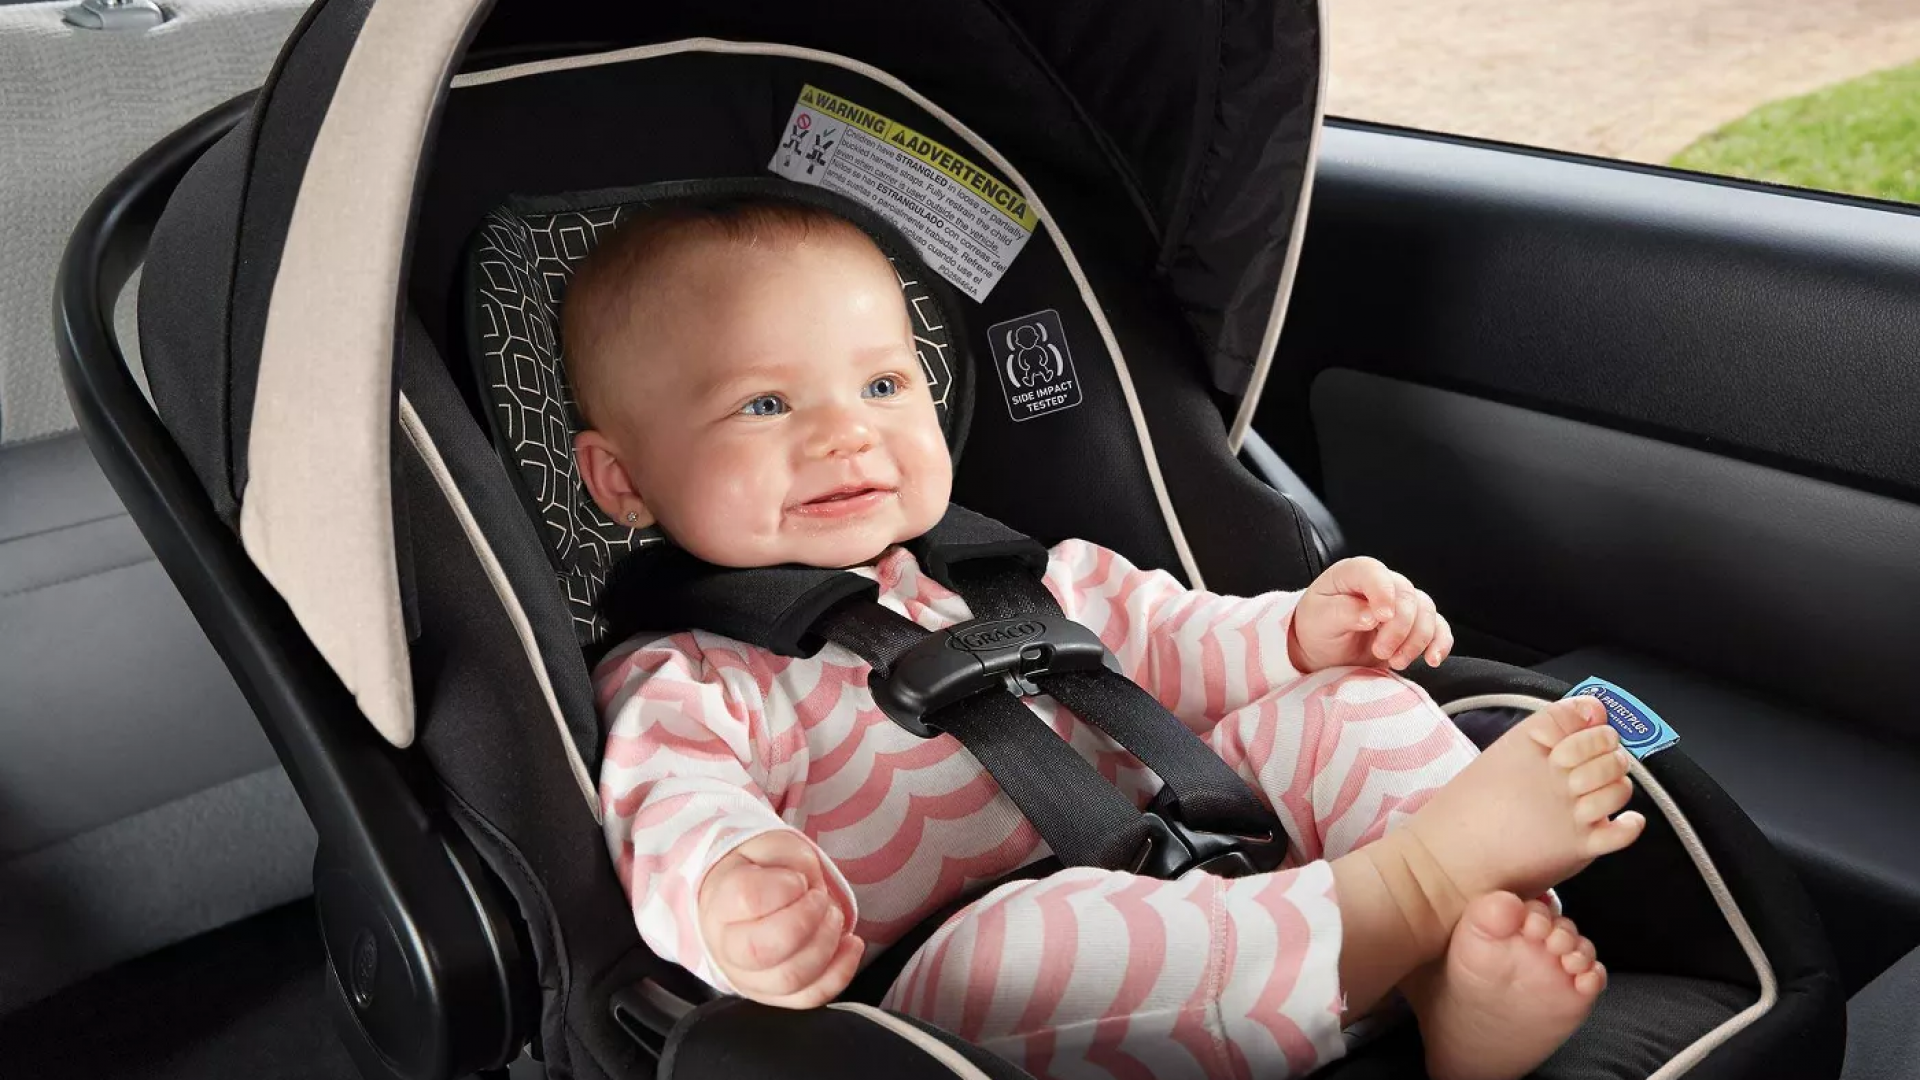 Free Child Car Seat Ings In June